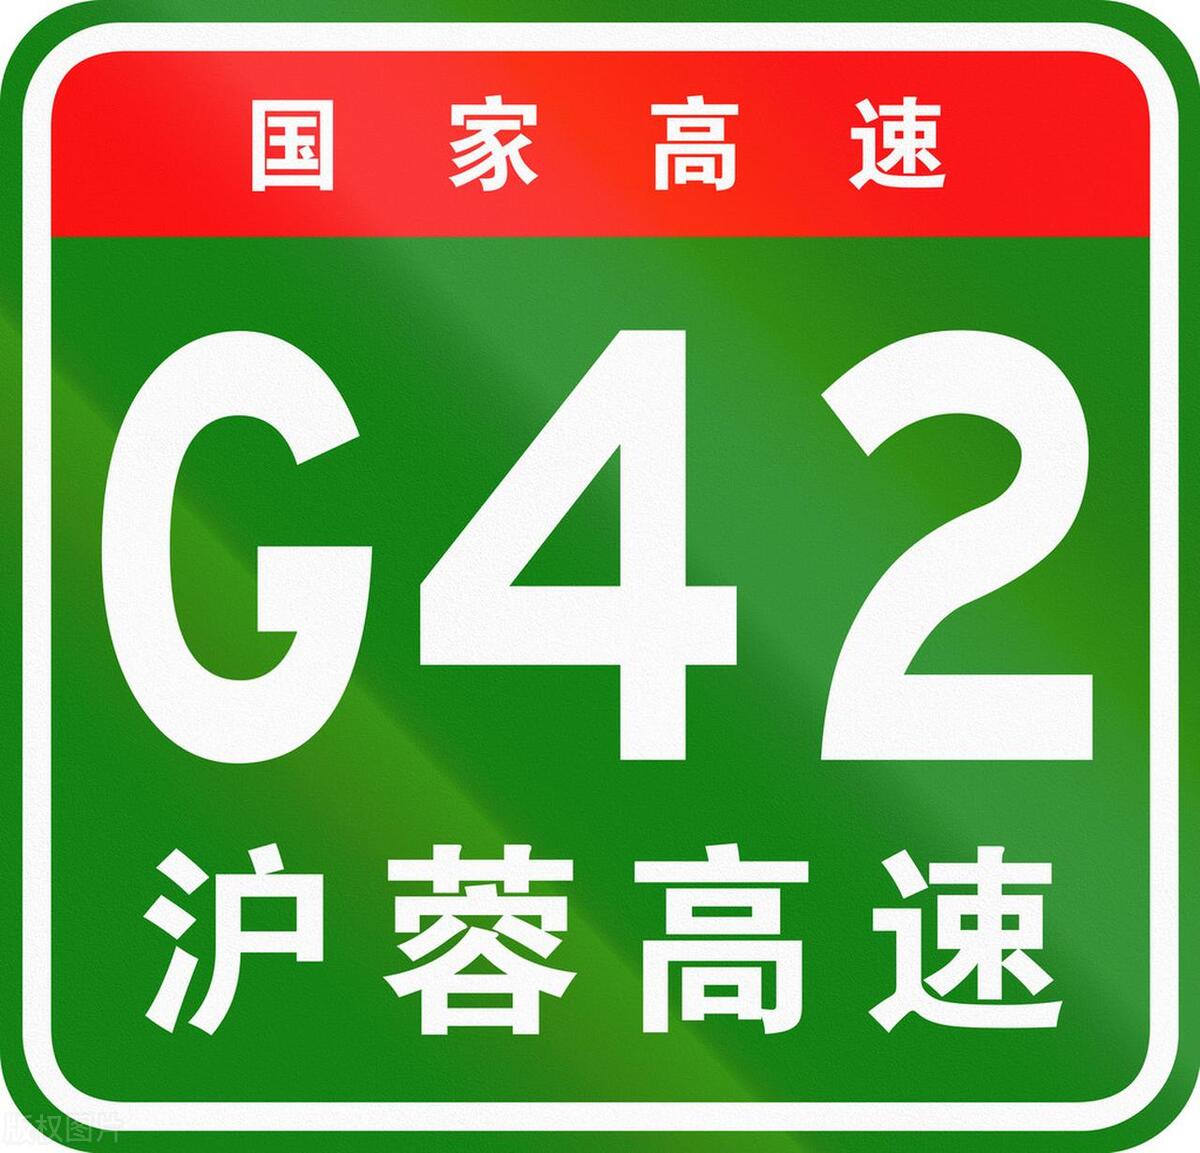 沪蓉高速沿线城市_沪蓉高速起点和终点是哪里_沪蓉高速起止点